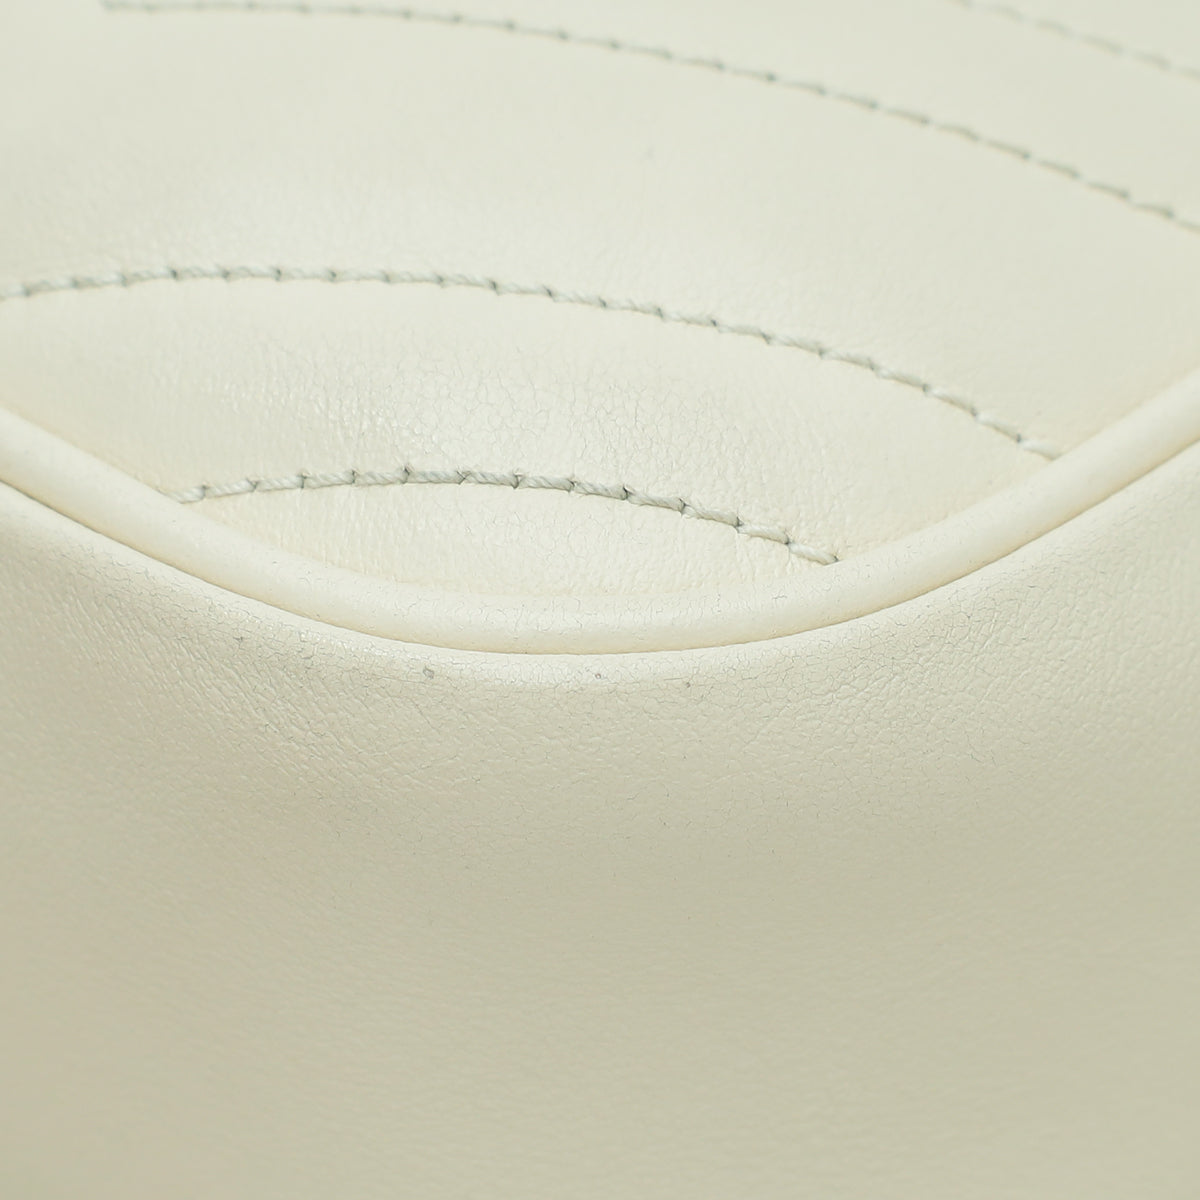 Gucci Cream GG Marmont Camera Small Shoulder Bag